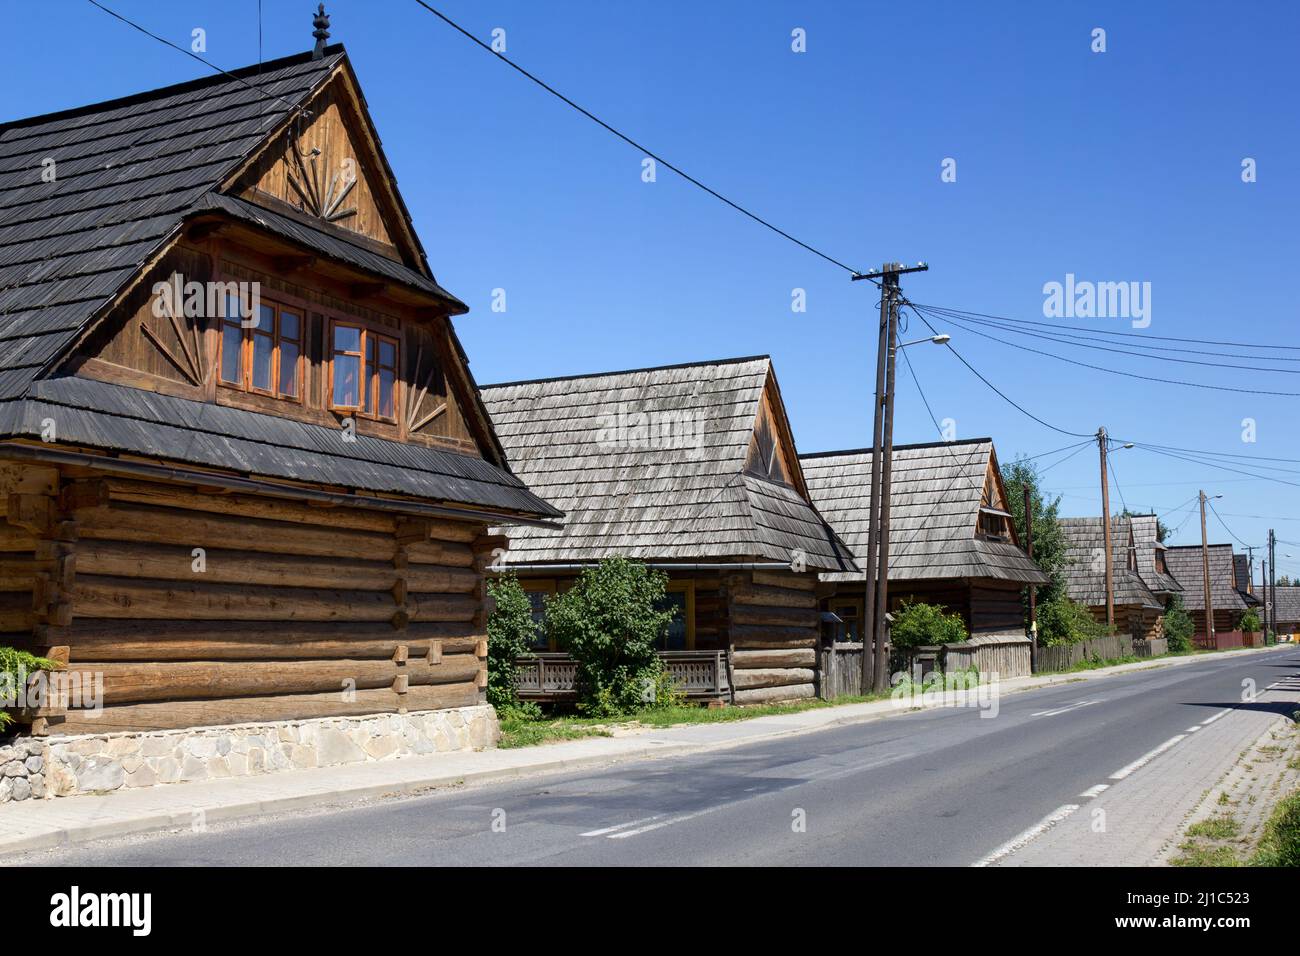 Village de chalet traditionnel en bois, Chocholow, montagnes Tatra Pologne Banque D'Images